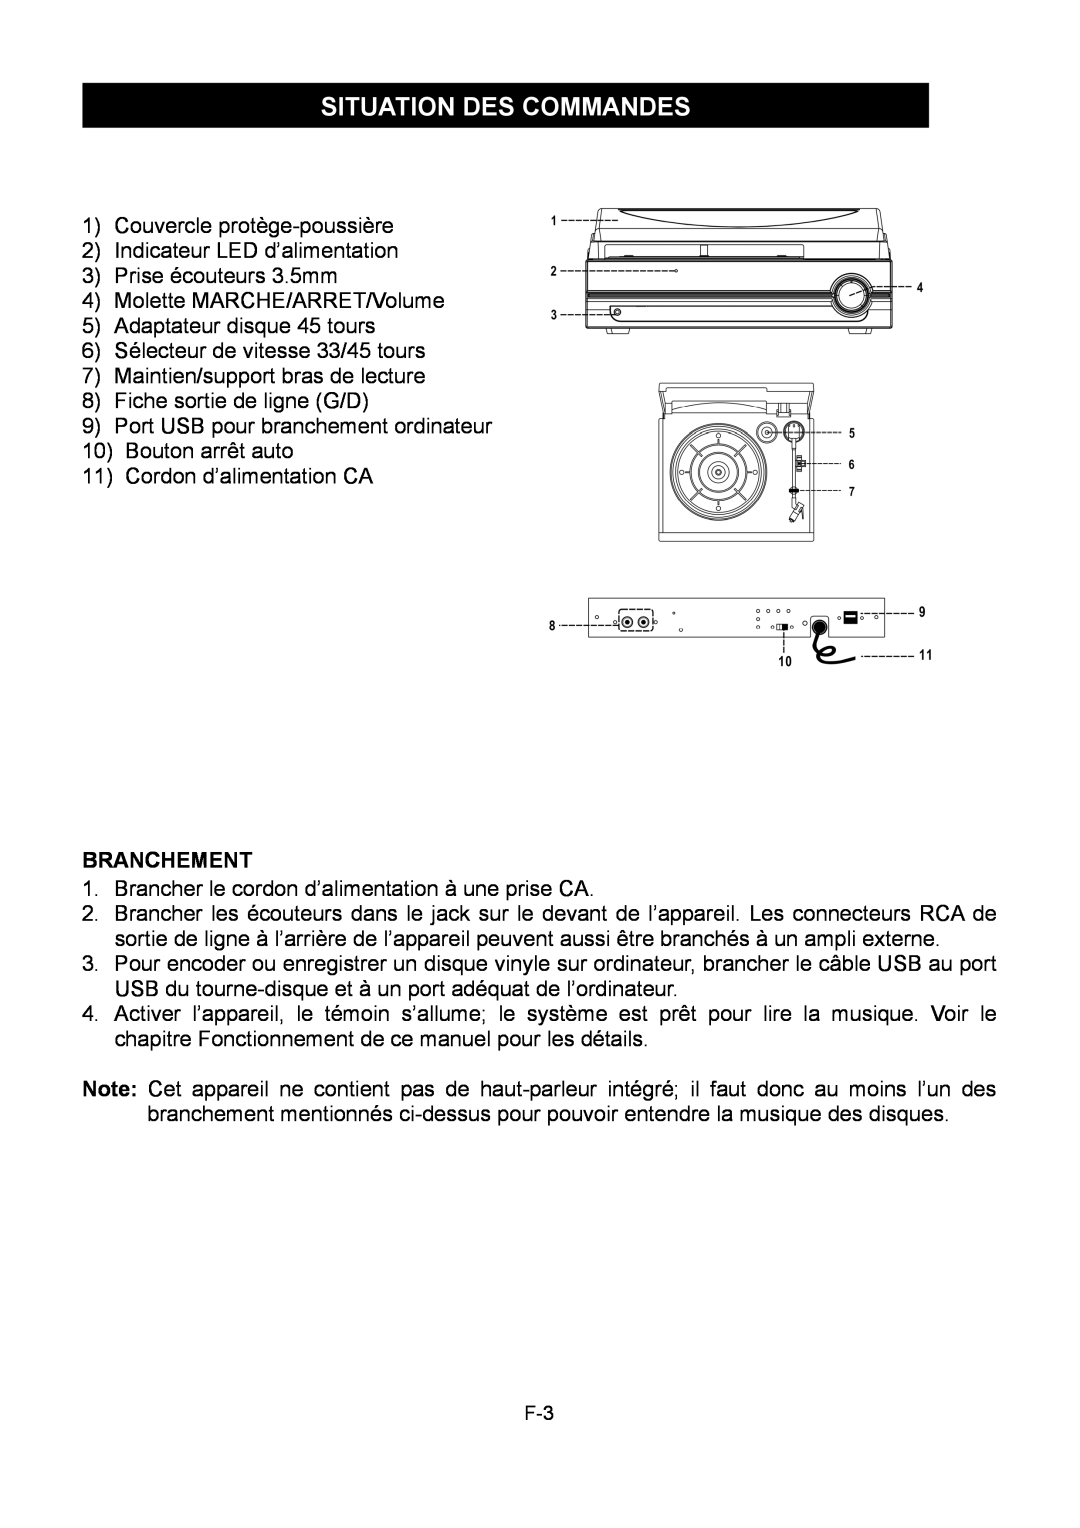 Sylvania SRCD872 instruction manual Situation Des Commandes, Branchement 